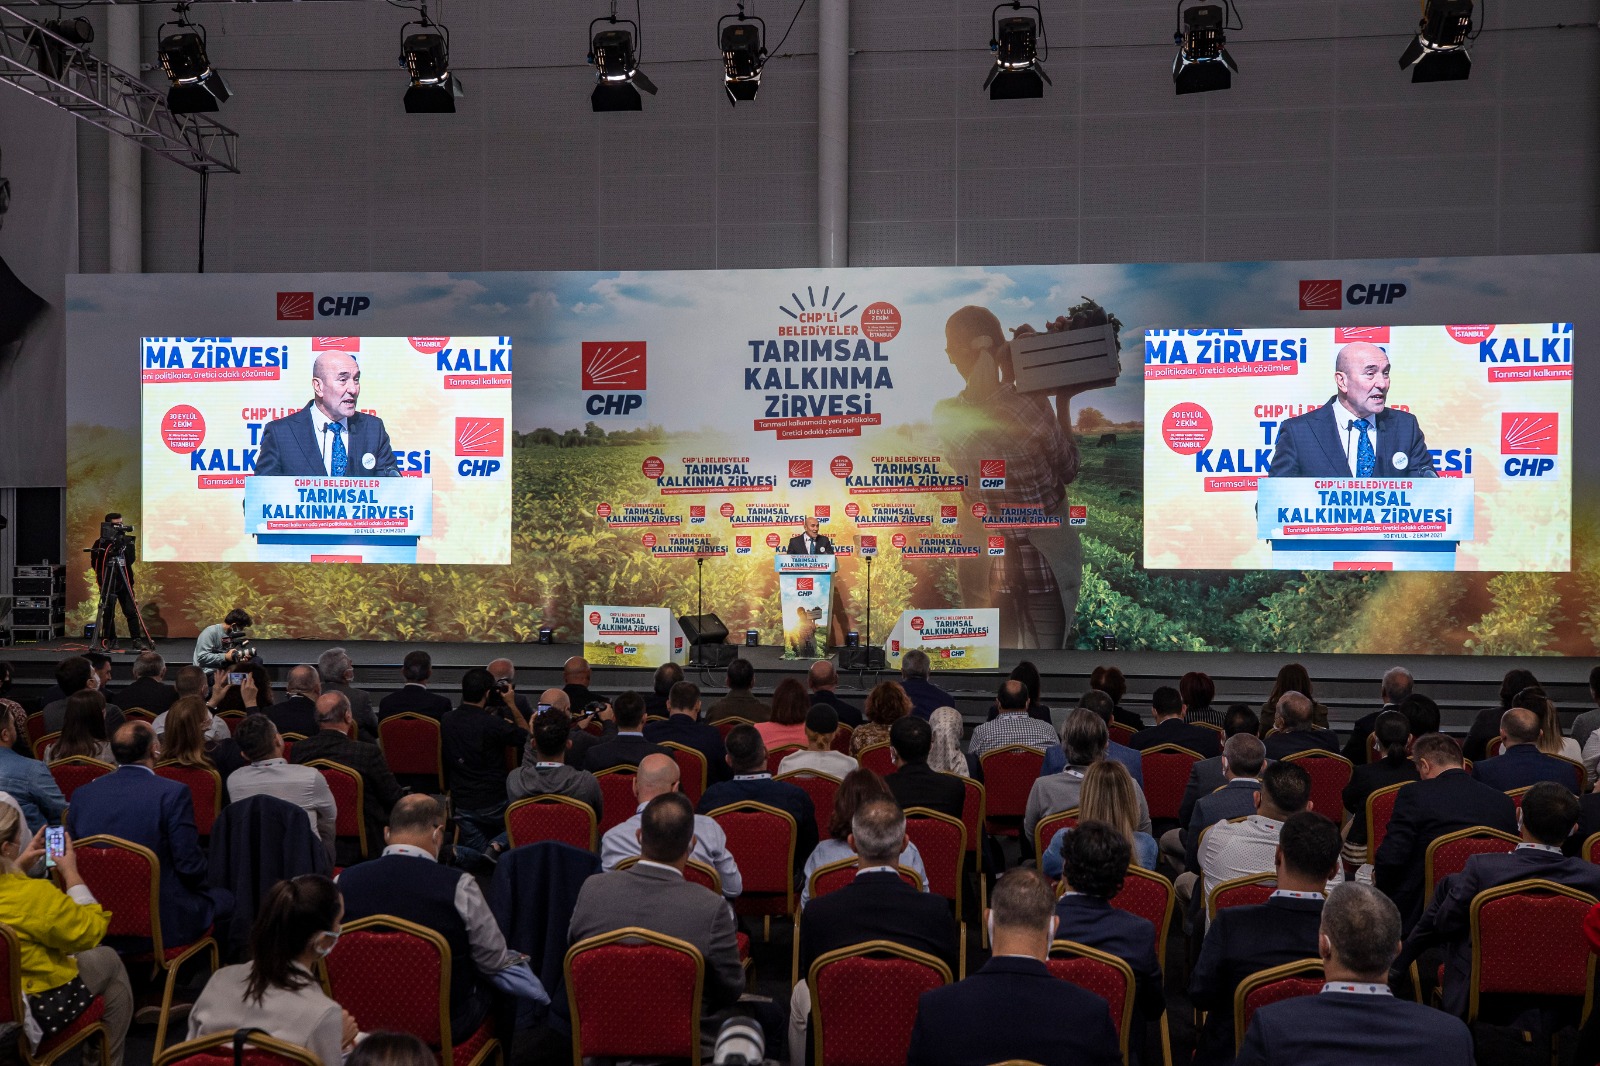 Başkan Soyer “Başka Bir Tarım Mümkün” vizyonunu İstanbul'da anlattı: Topraklarımızın kuraklaşmasına ve halkımızın yoksullaşmasına asla göz yumamayız